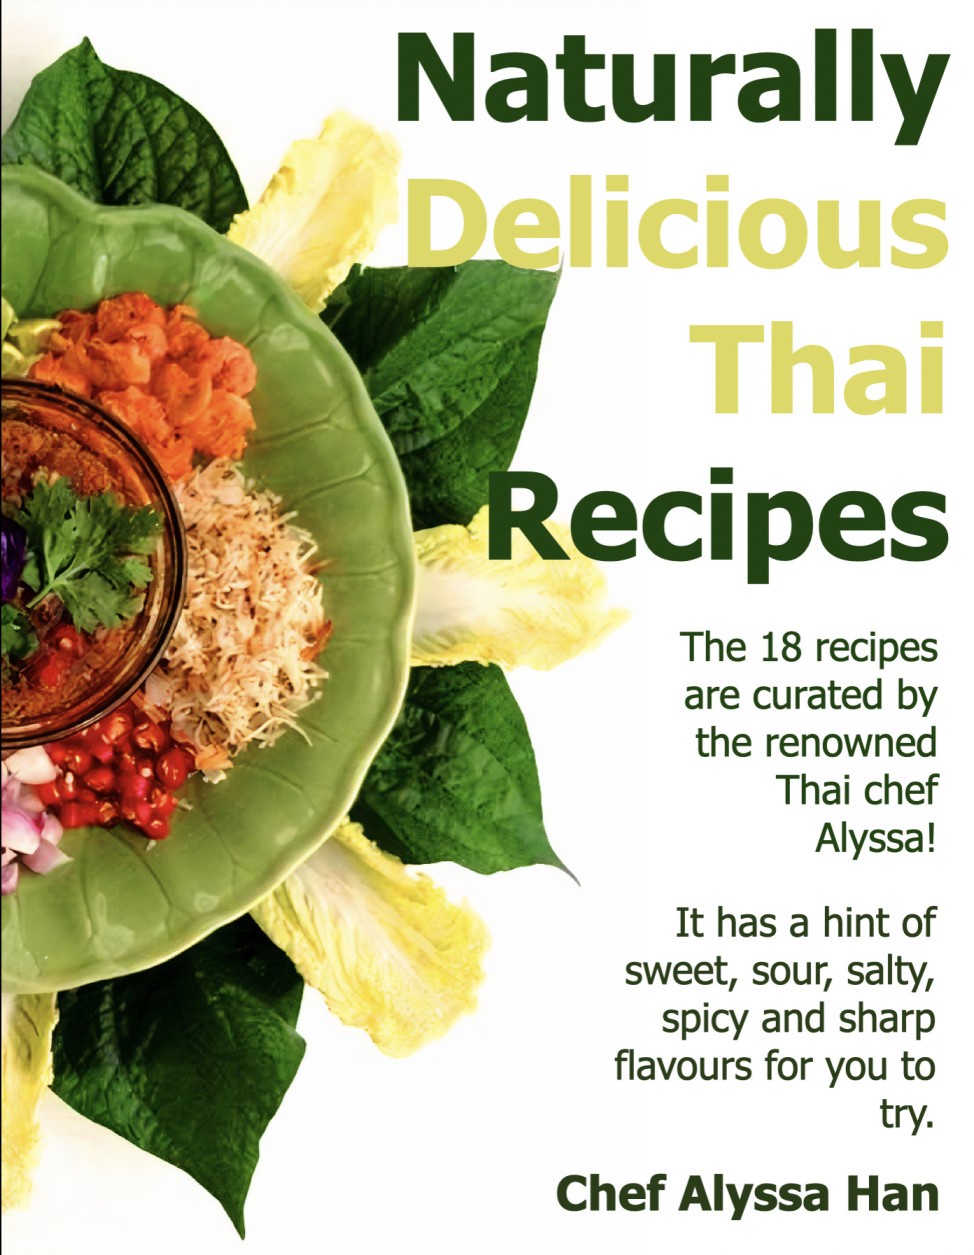 ครั้งแรกกับการเปิดตัว 'สูตรตำรับอาหารไทยจากธรรมชาติ' E-Cook Book โดย เชฟอลิสา